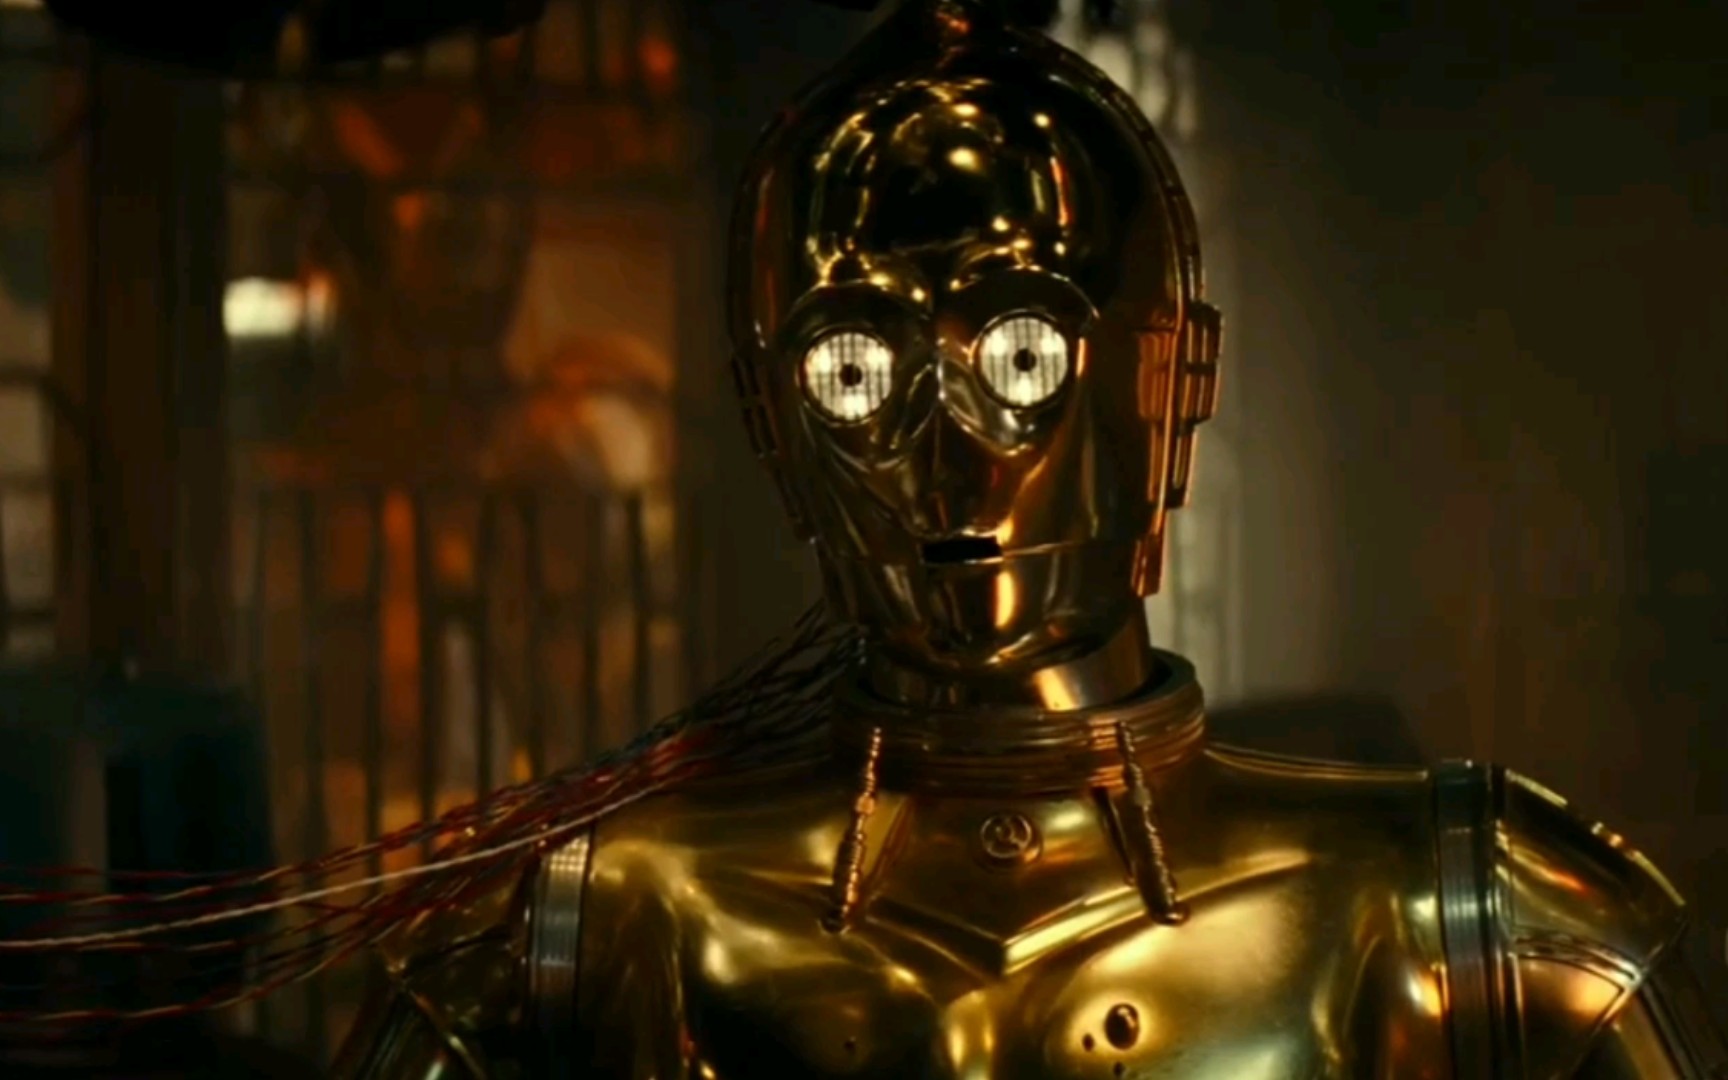 3PO记得安纳金和过去